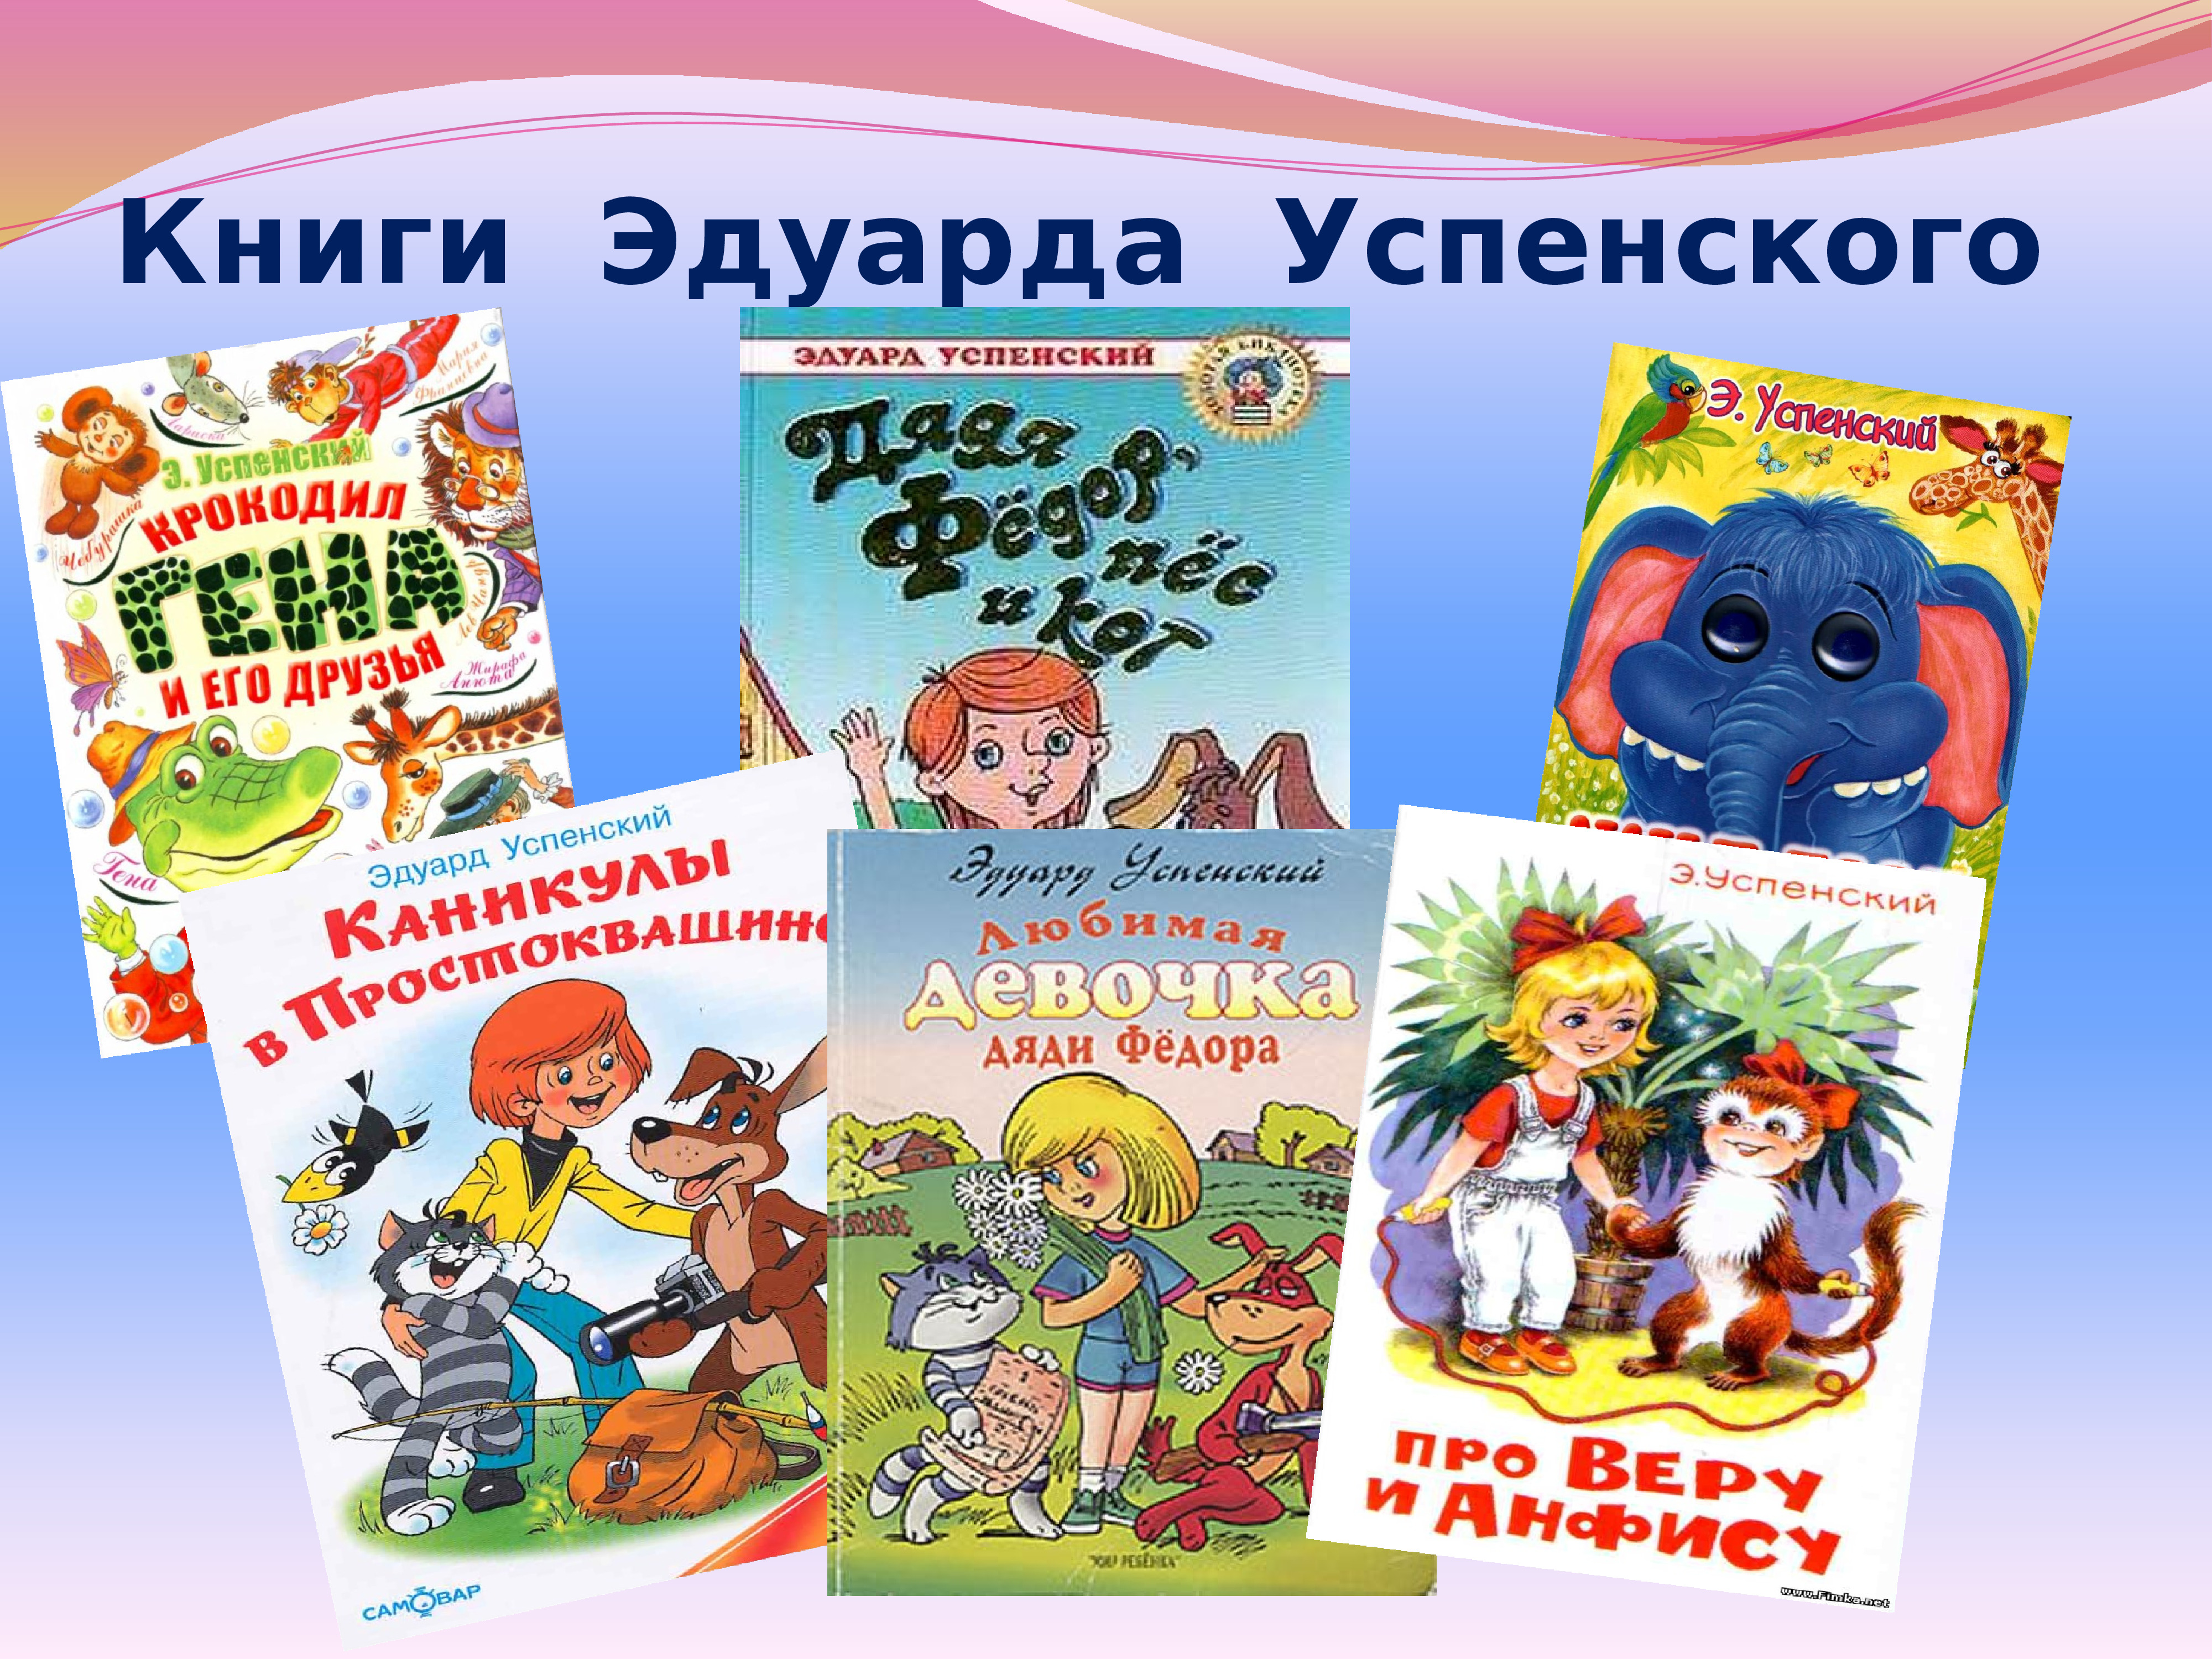 Пять названий книг. Э.Успенский и его книги. Э Н Успенский произведения для детей. Книги Эдуарда Успенского для детей.